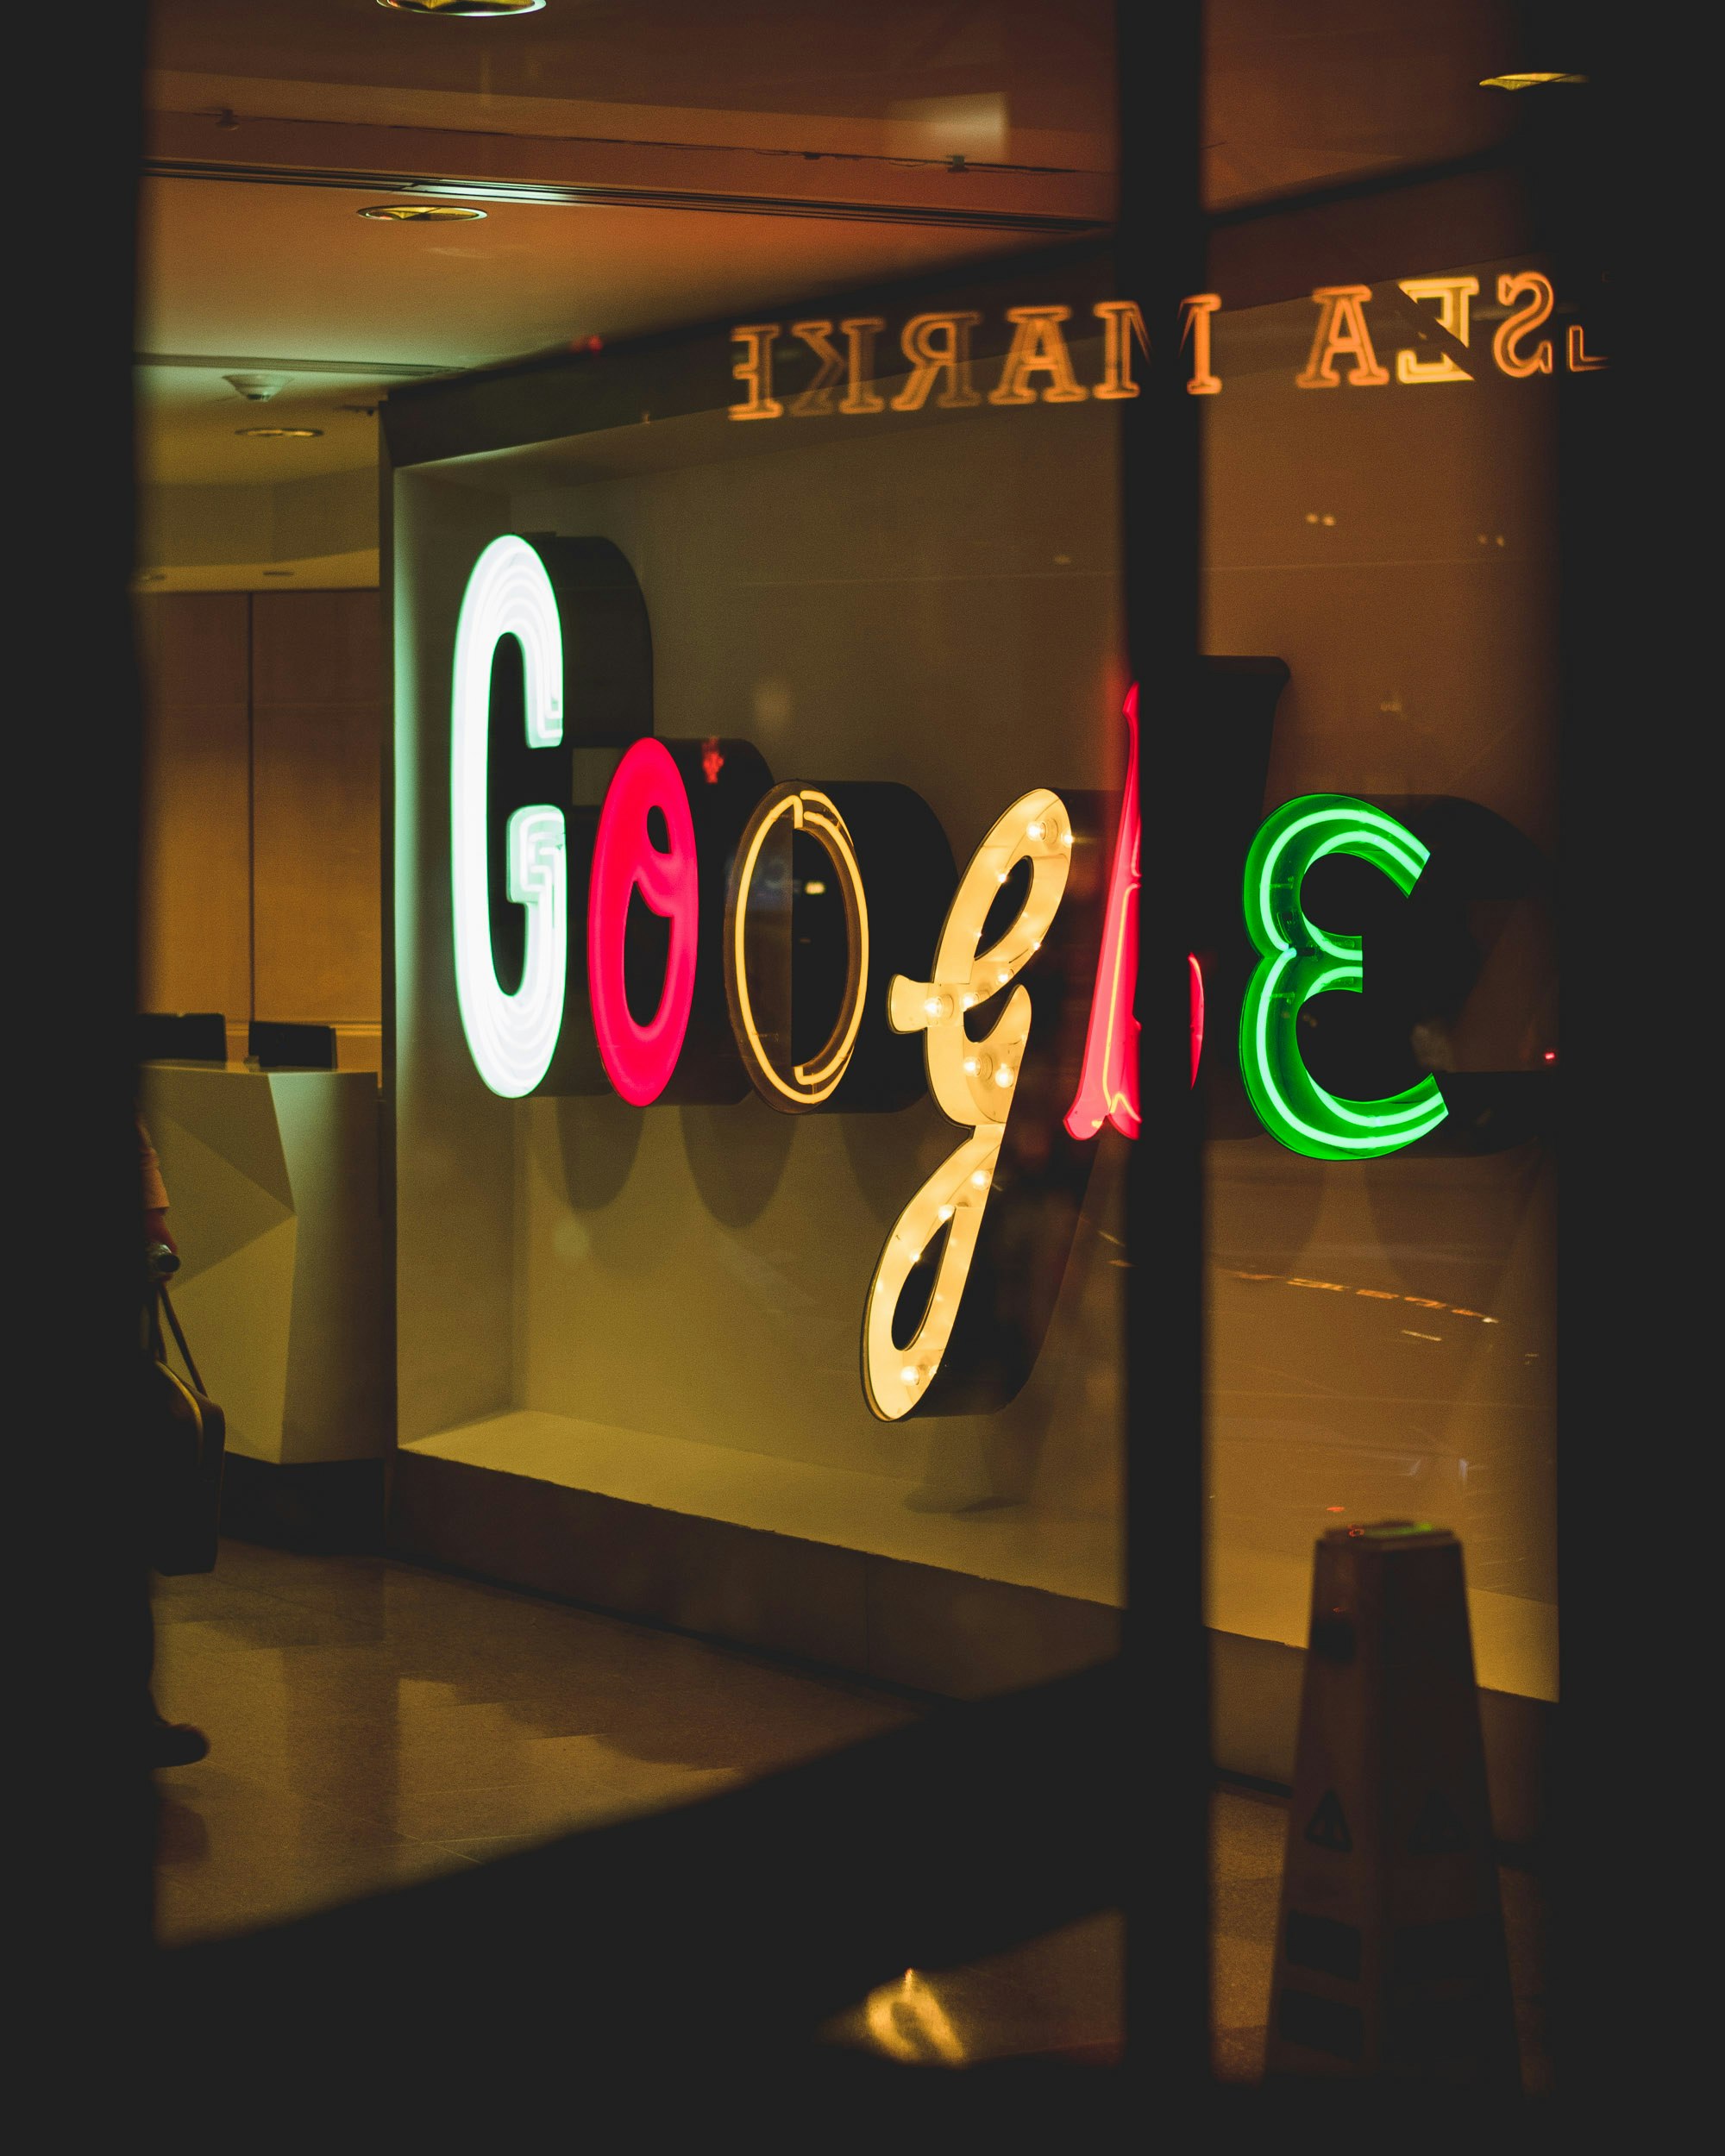 Завтра большой день: Google, скорее всего, начнет разрешать рекламу биткойн-спотовых ETF